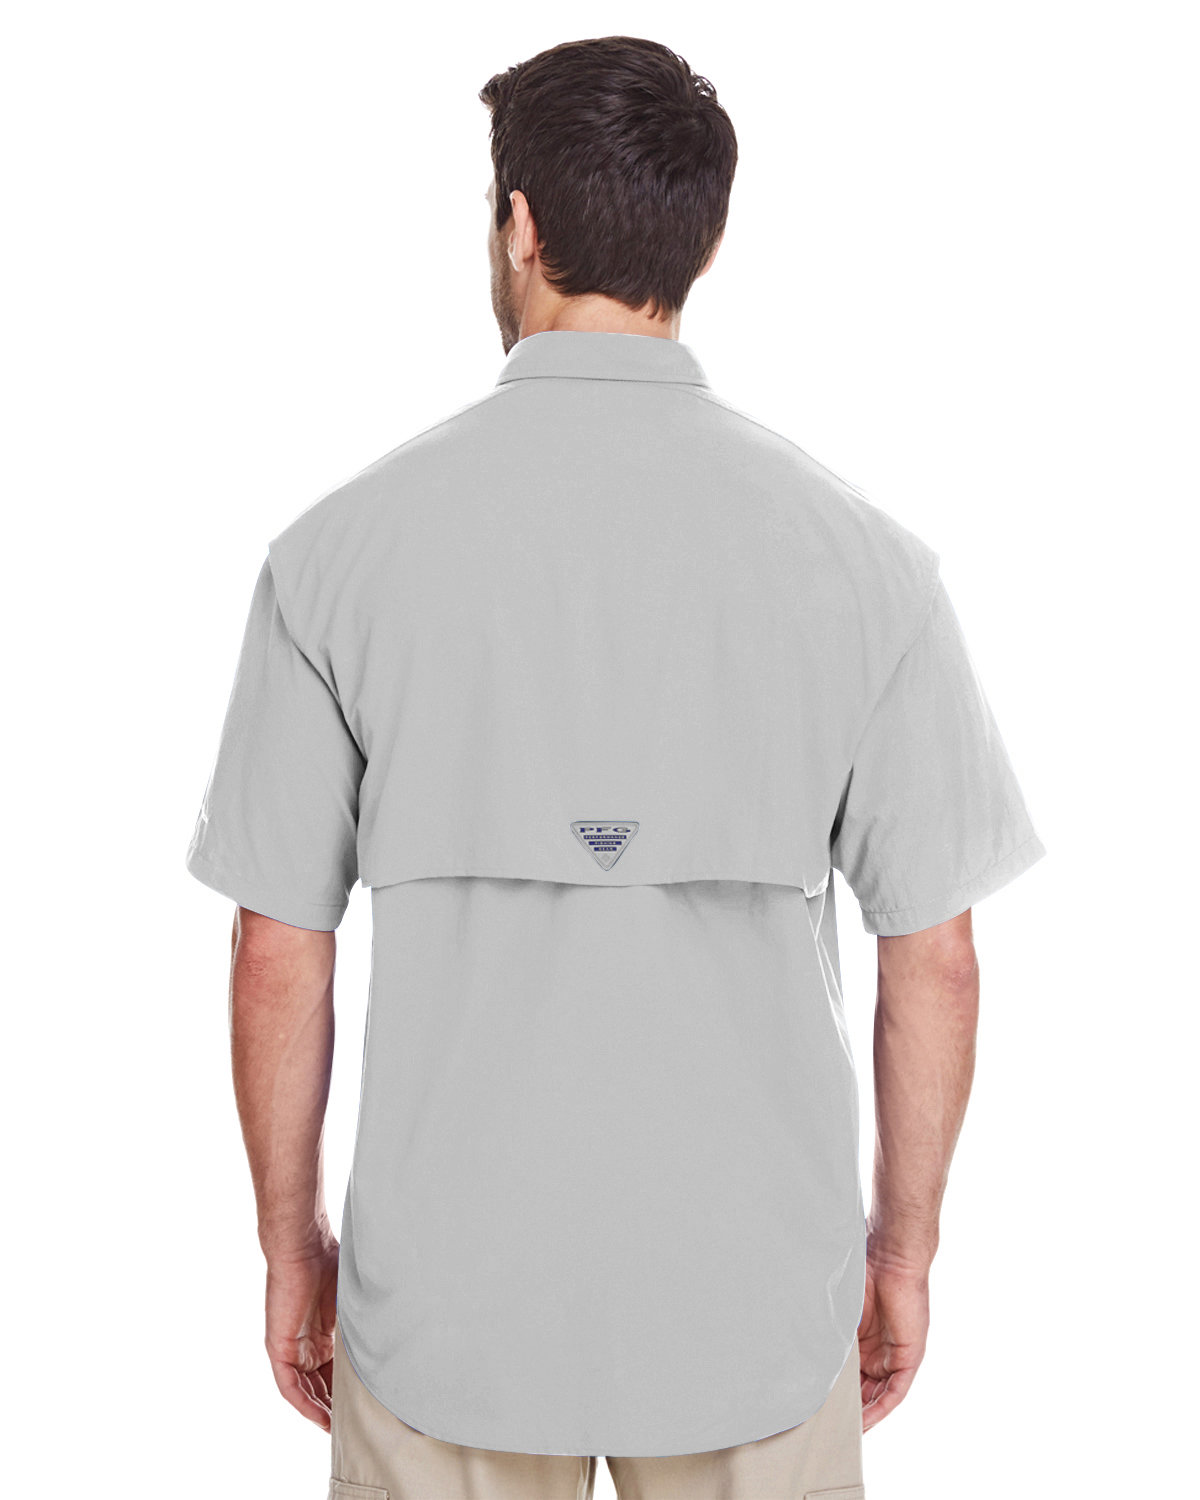 Buy Columbia Men's Bahama II UPF 30 Short Sleeve PFG Fishing Shirt